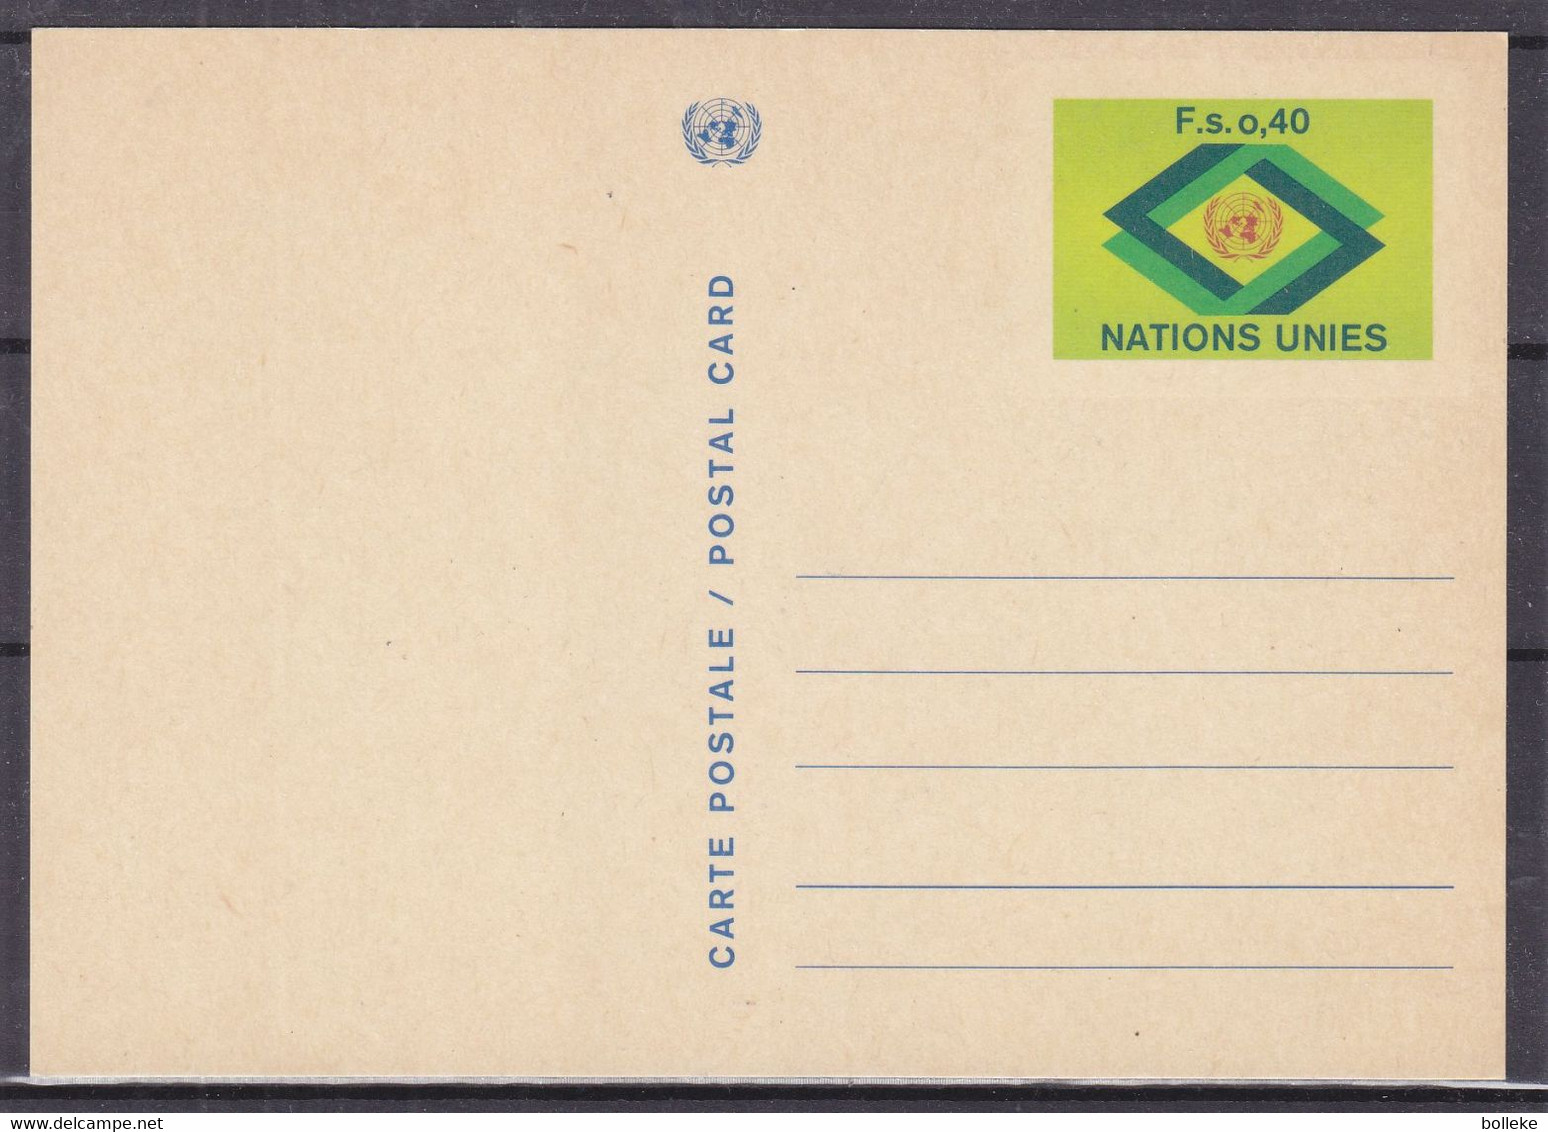 Nations Unies - Genève - Carte Postale De 1977 - Entier Postal - - Covers & Documents